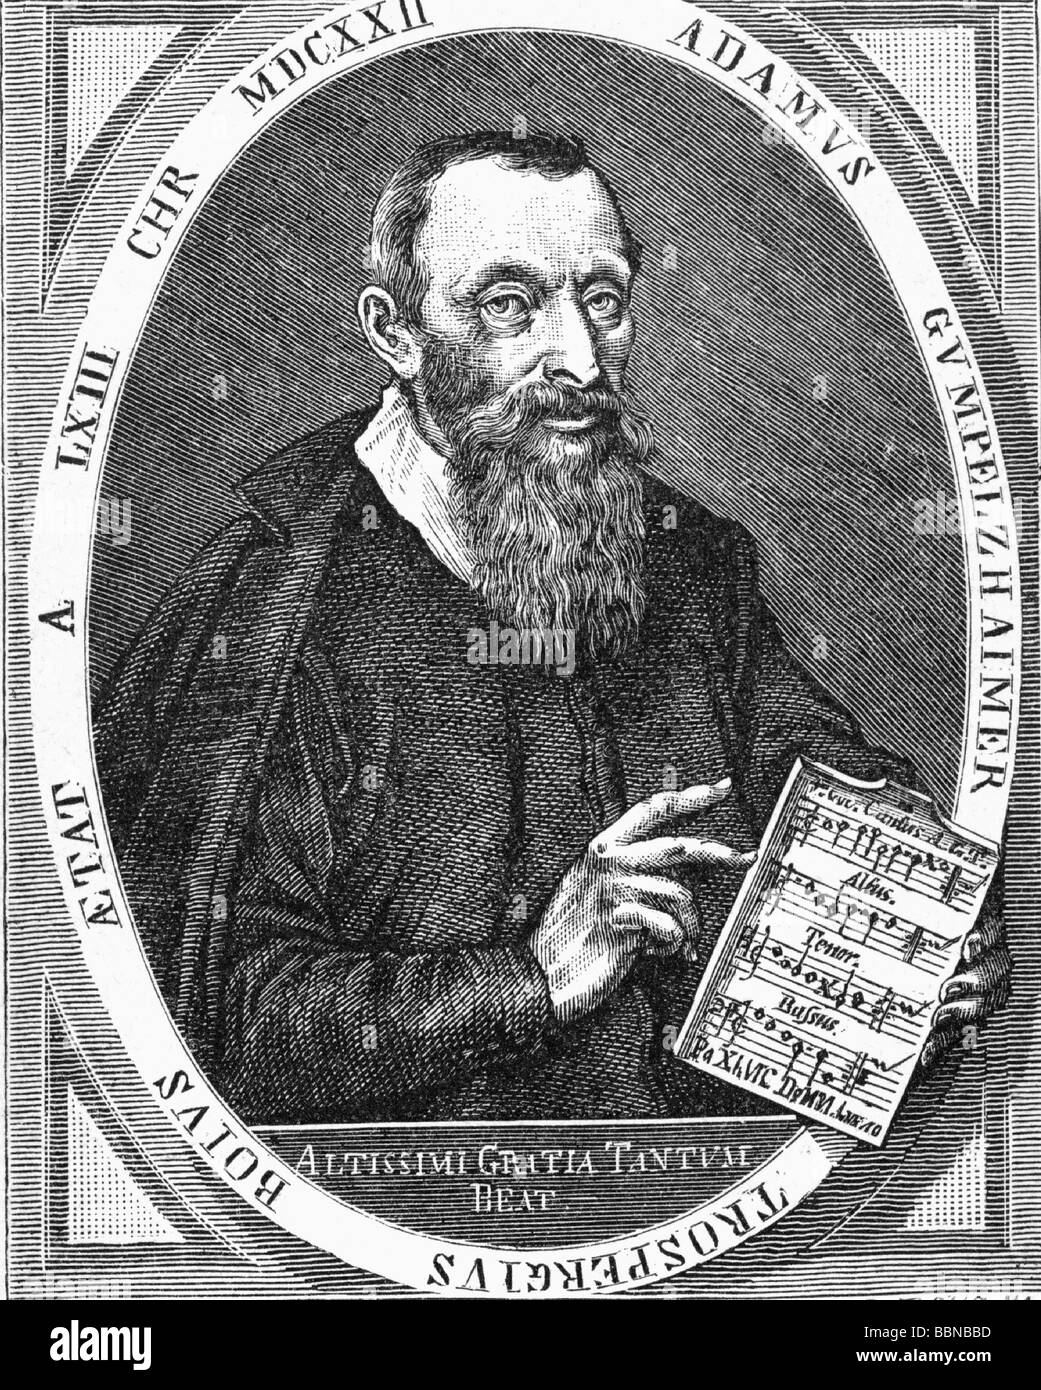 Gumpelzhaimer, Adam, 1559 - 3.11.1625, musicien Allemand (compositeur), demi-longueur, ovale, gravure sur bois, gravure sur cuivre contemporain après, par R. Bong, vers 1622, l'artiste n'a pas d'auteur pour être effacé Banque D'Images